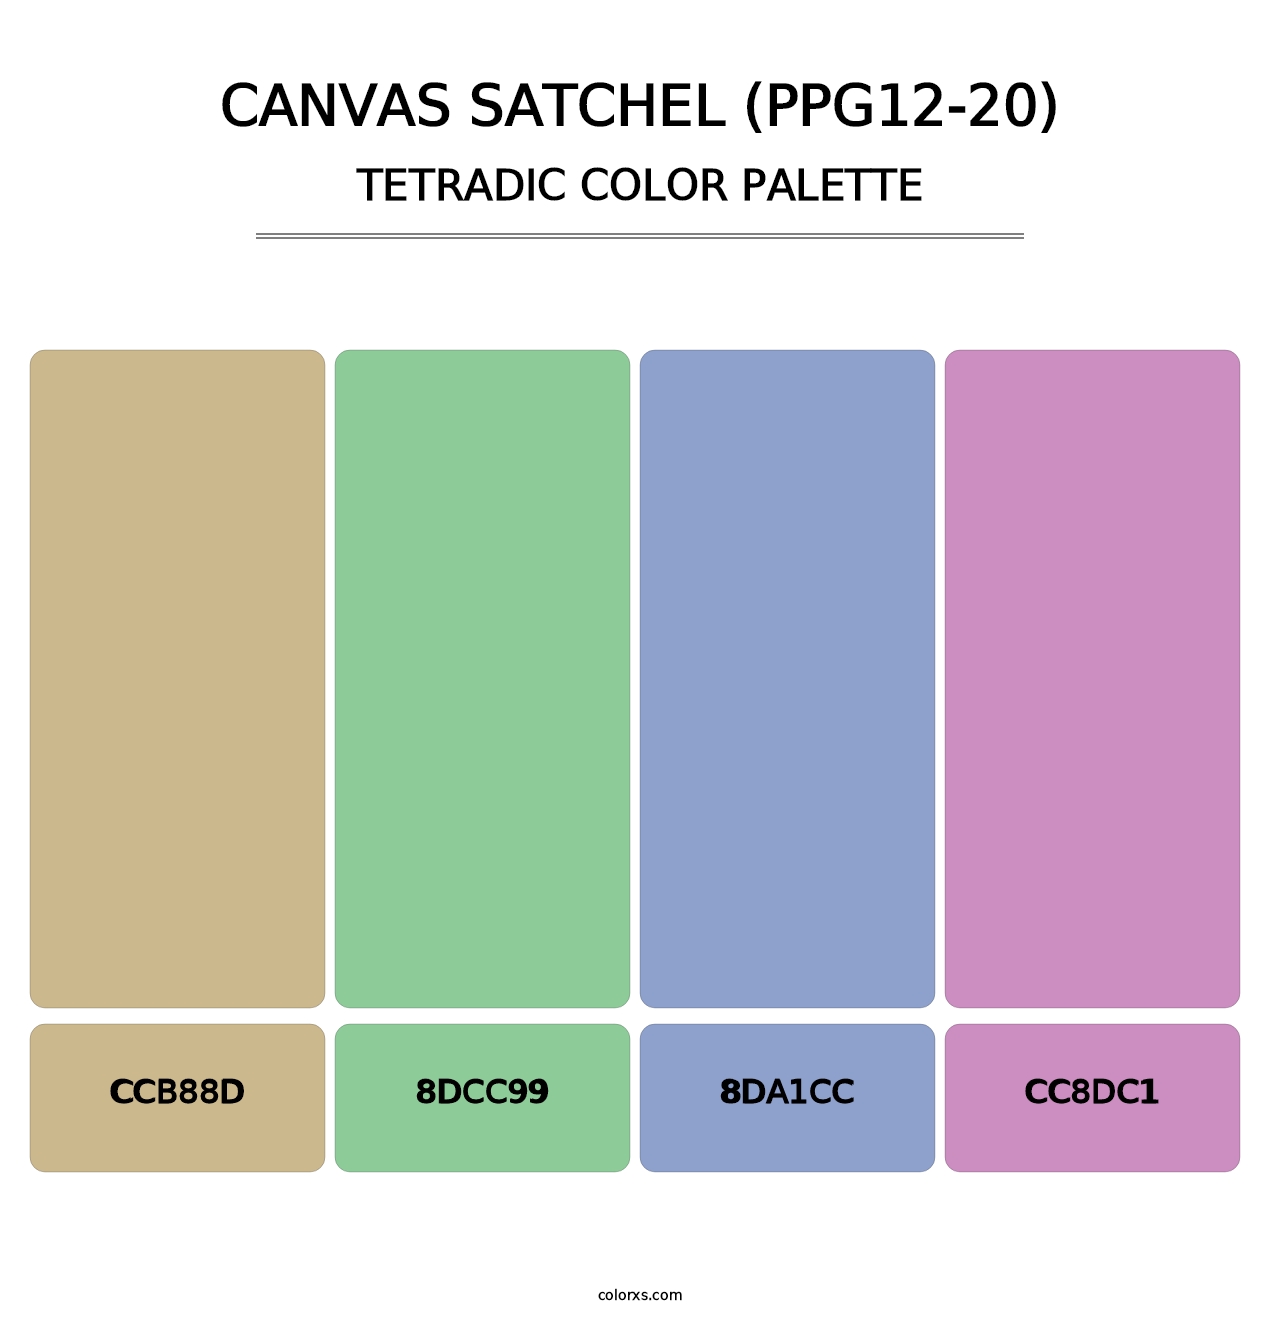 Canvas Satchel (PPG12-20) - Tetradic Color Palette